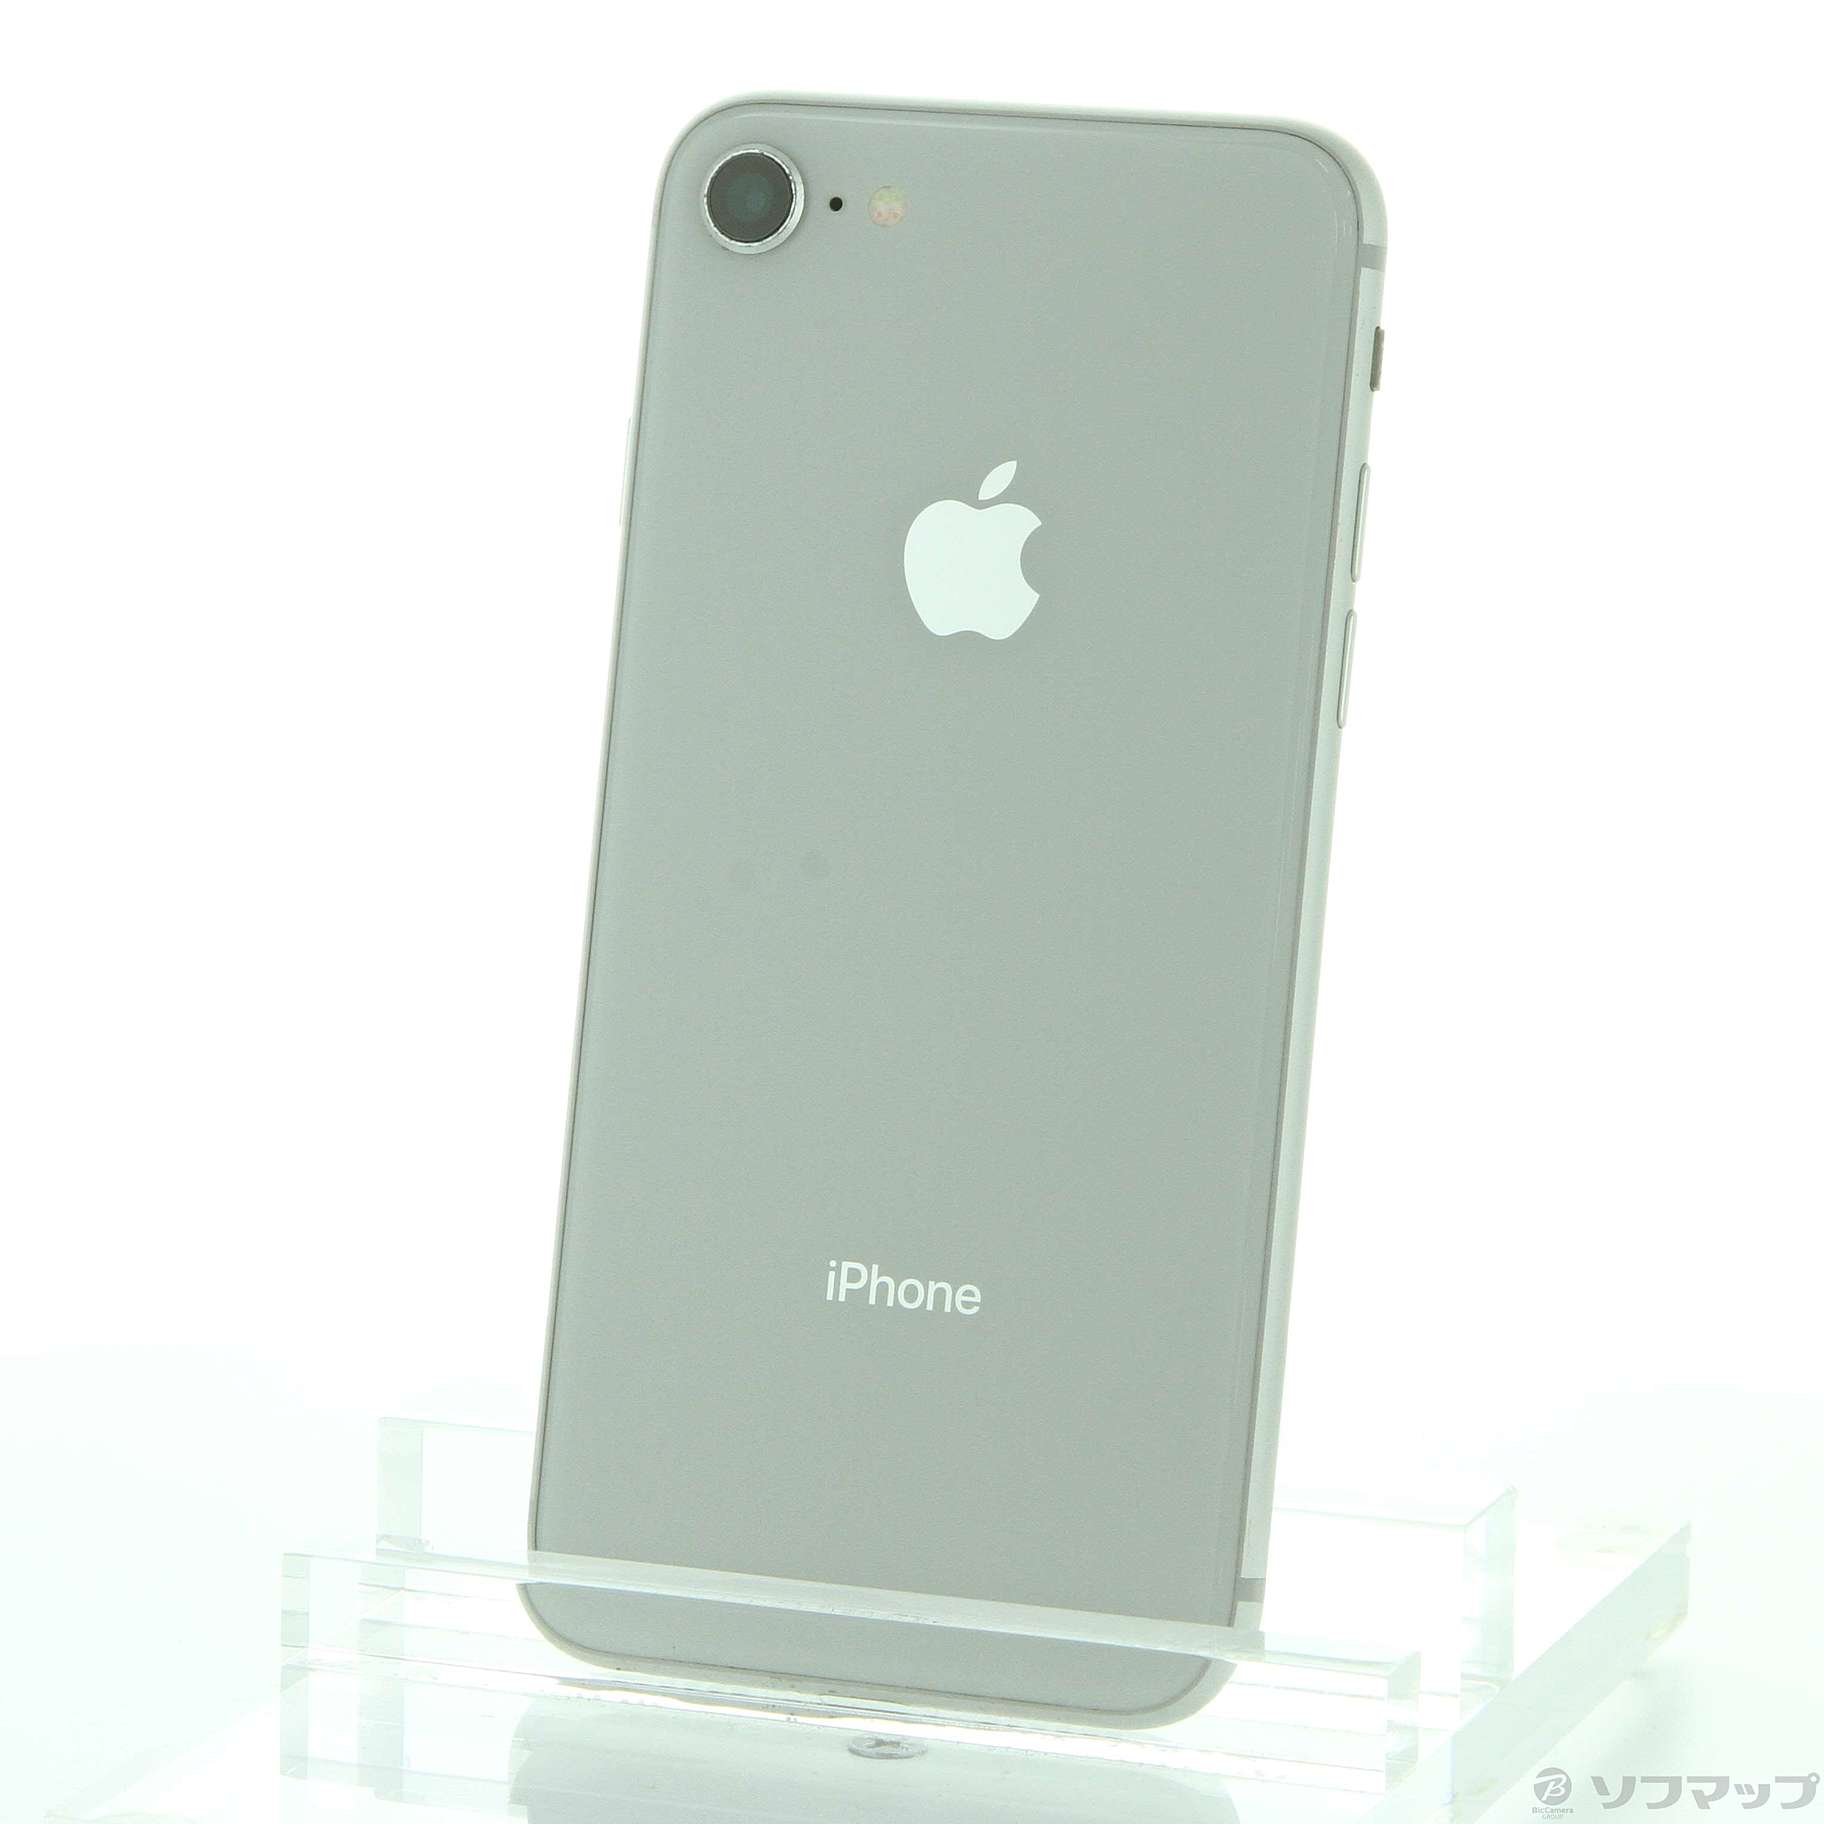 iPhone8 silver 256GB SIMフリー